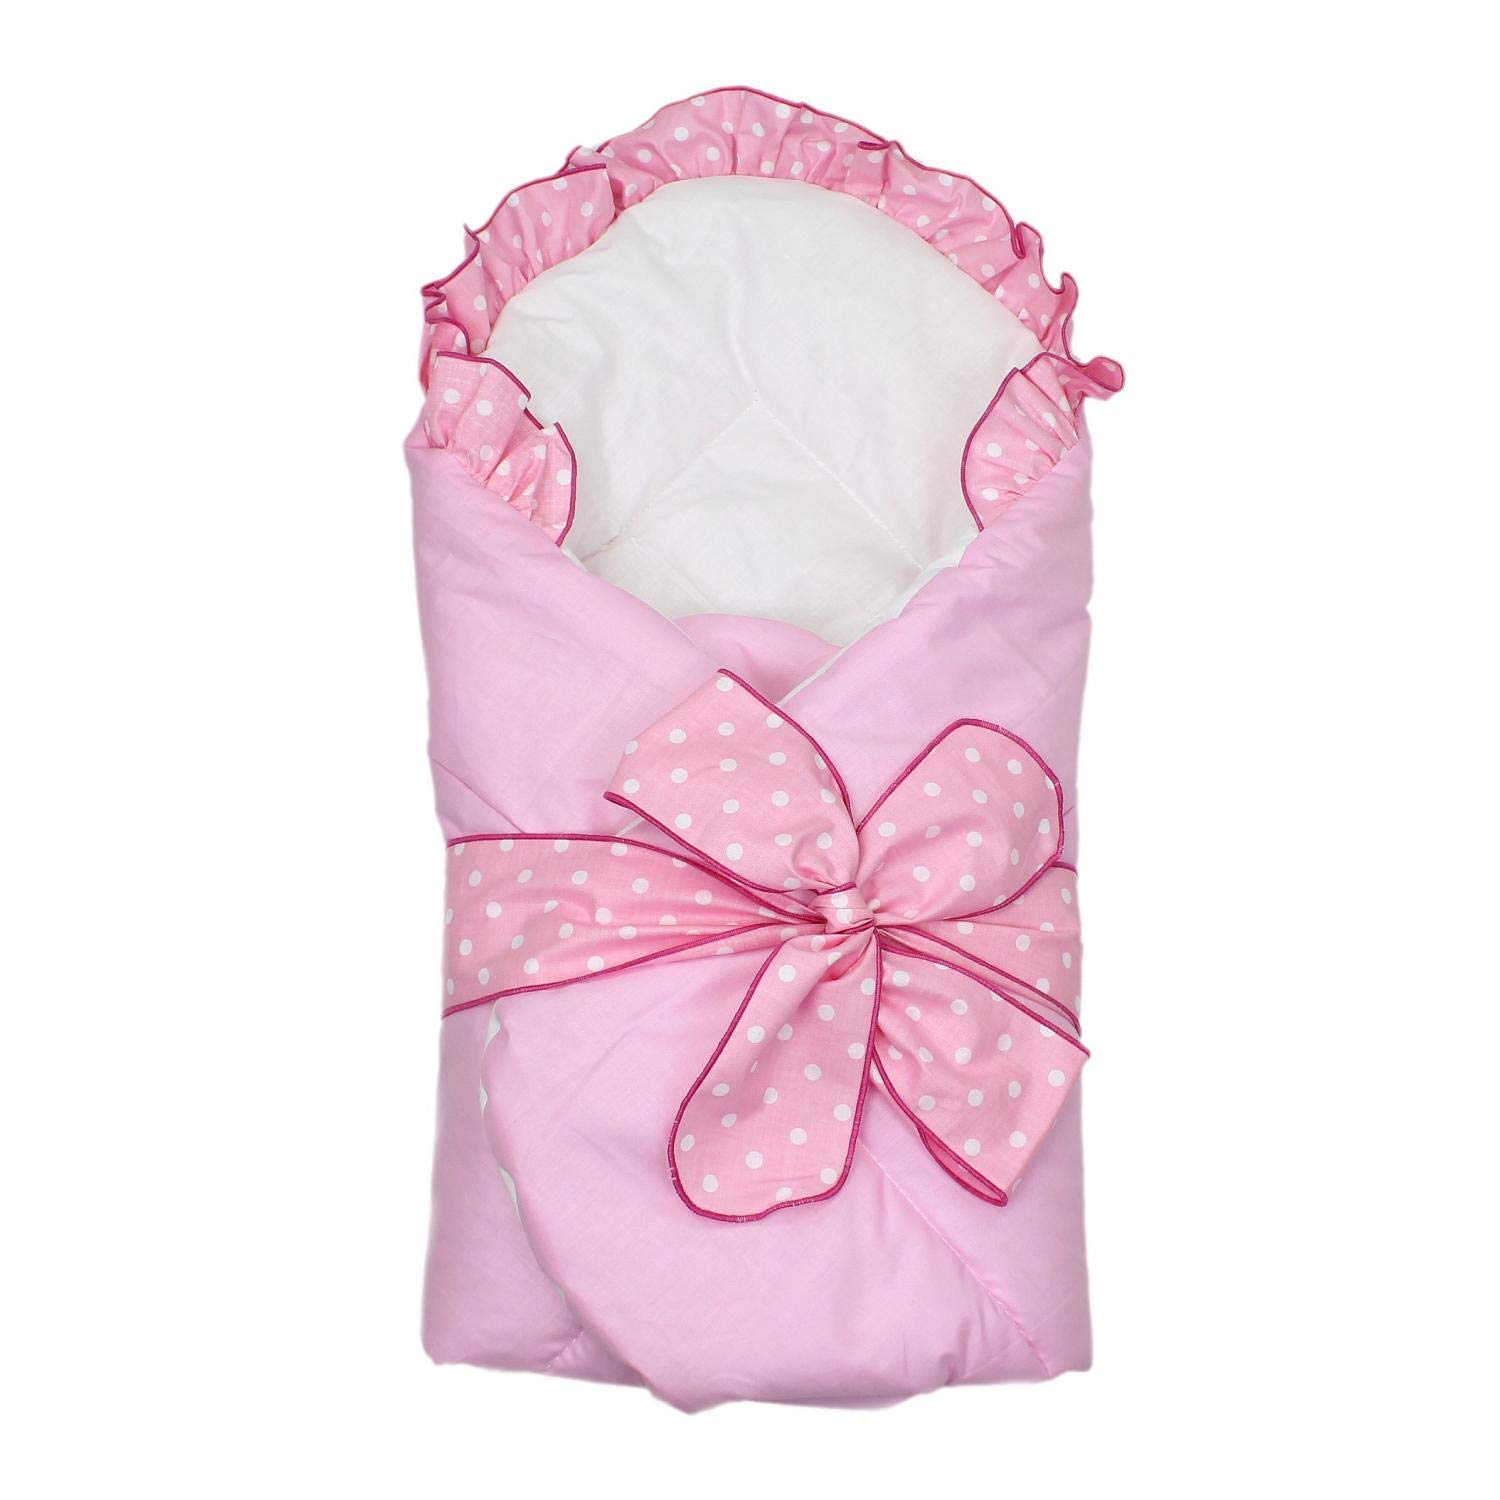 TupTam Unisex Baby Swaddling Blanket with Bow - Pink - Size: 70 x 70 cm